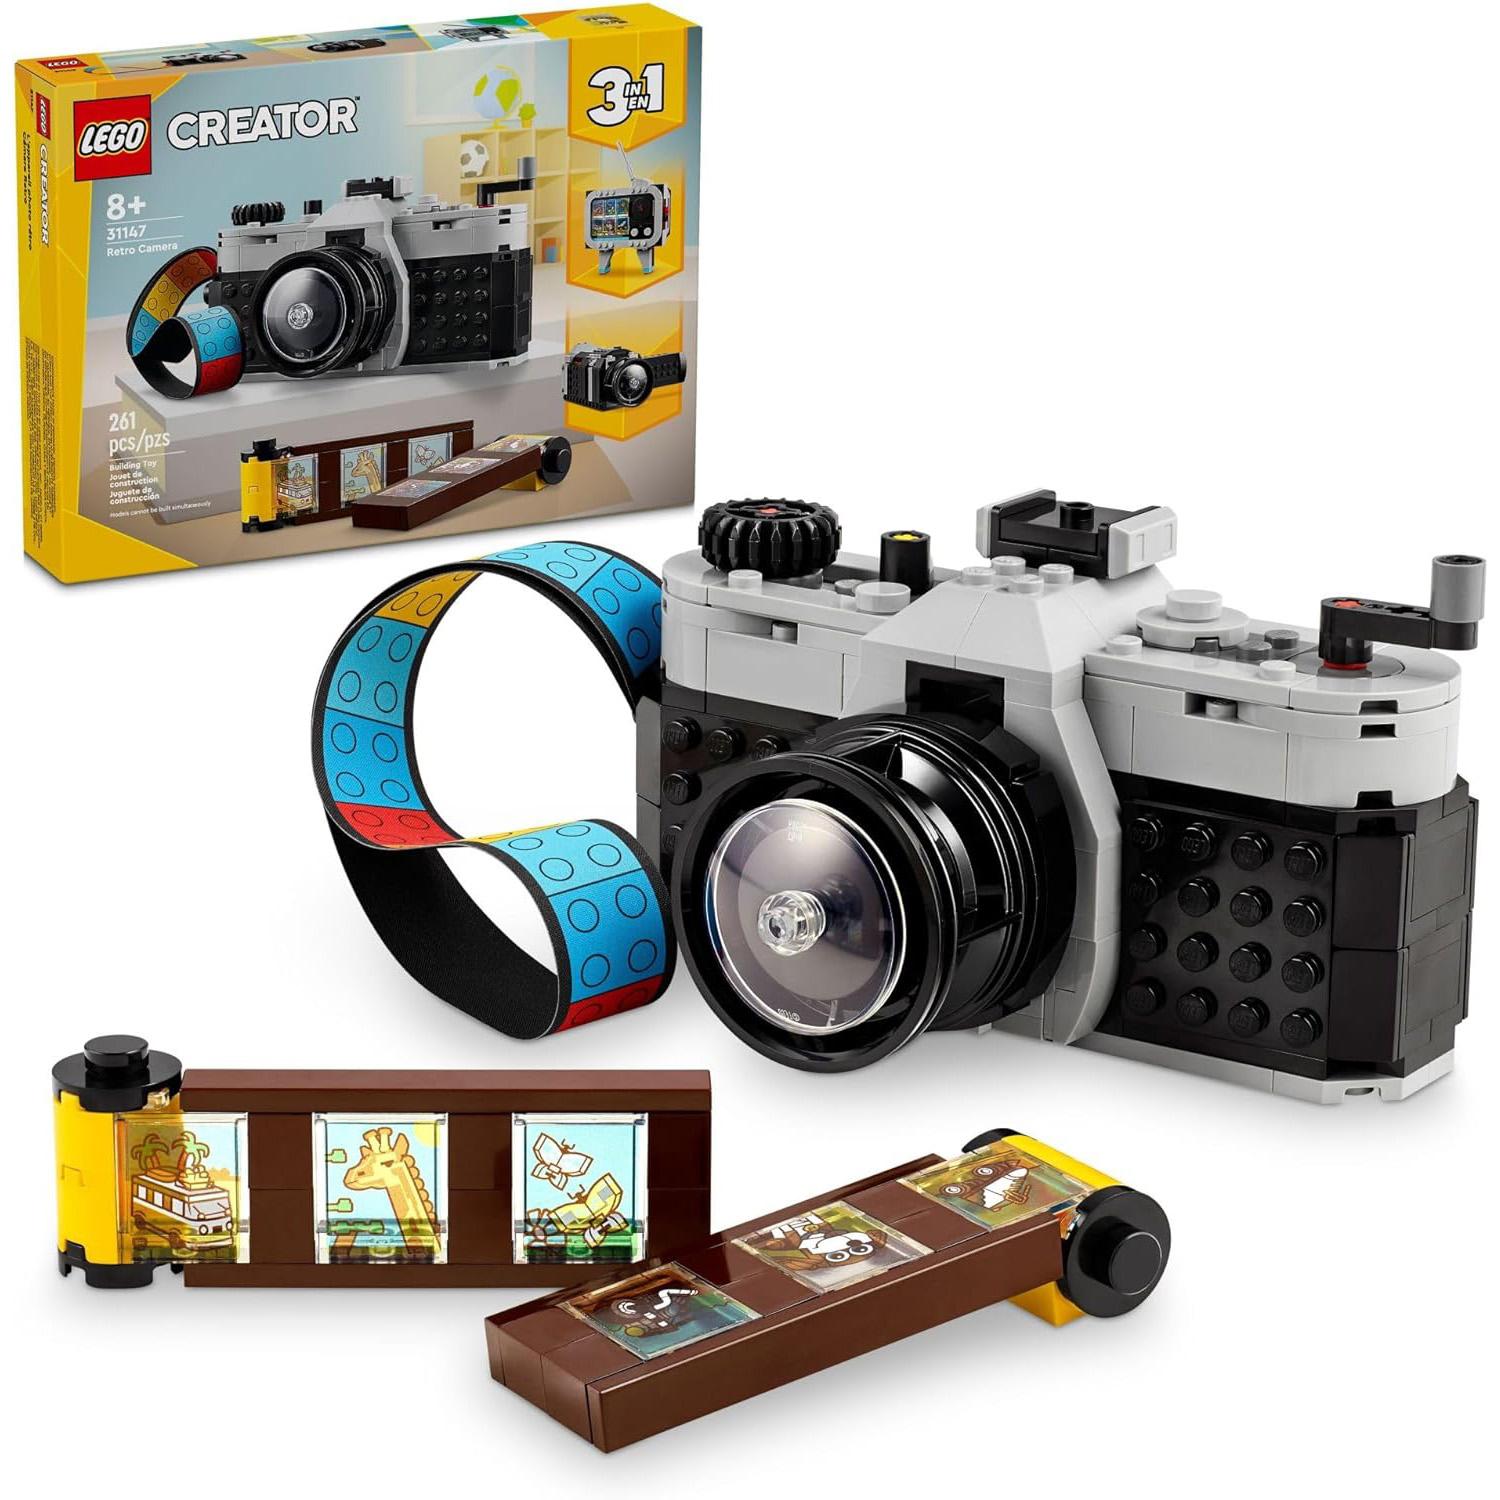 Lego Creator 3-in-1 Retro Camera Toy 31147 for $15.99